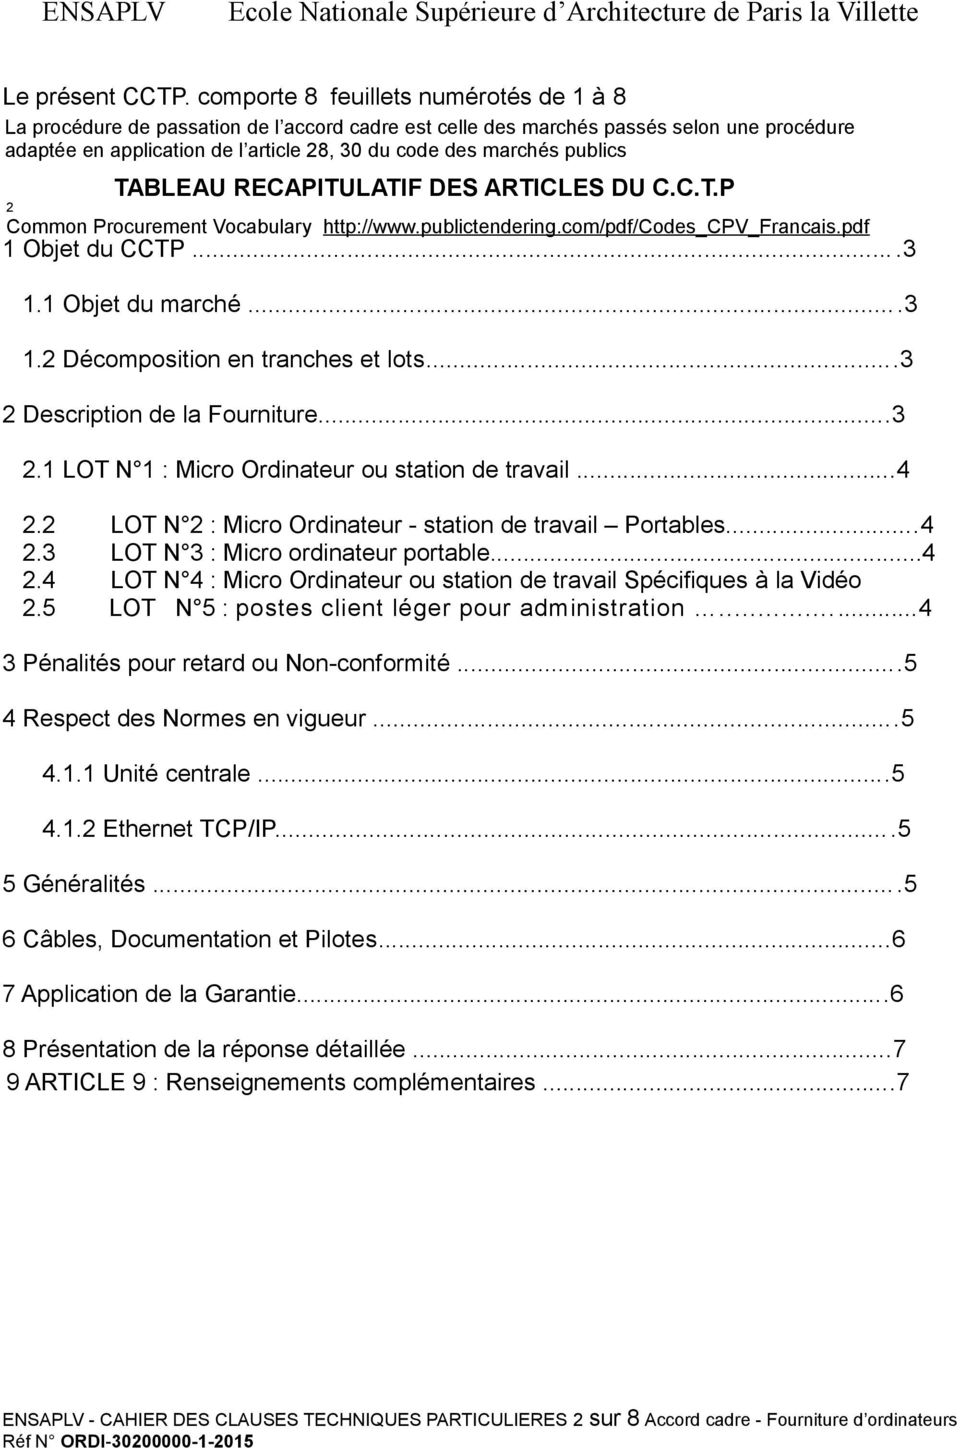 publics TABLEAU RECAPITULATIF DES ARTICLES DU C.C.T.P 2 Common Procurement Vocabulary http://www.publictendering.com/pdf/codes_cpv_francais.pdf 1 Objet du CCTP...3 1.